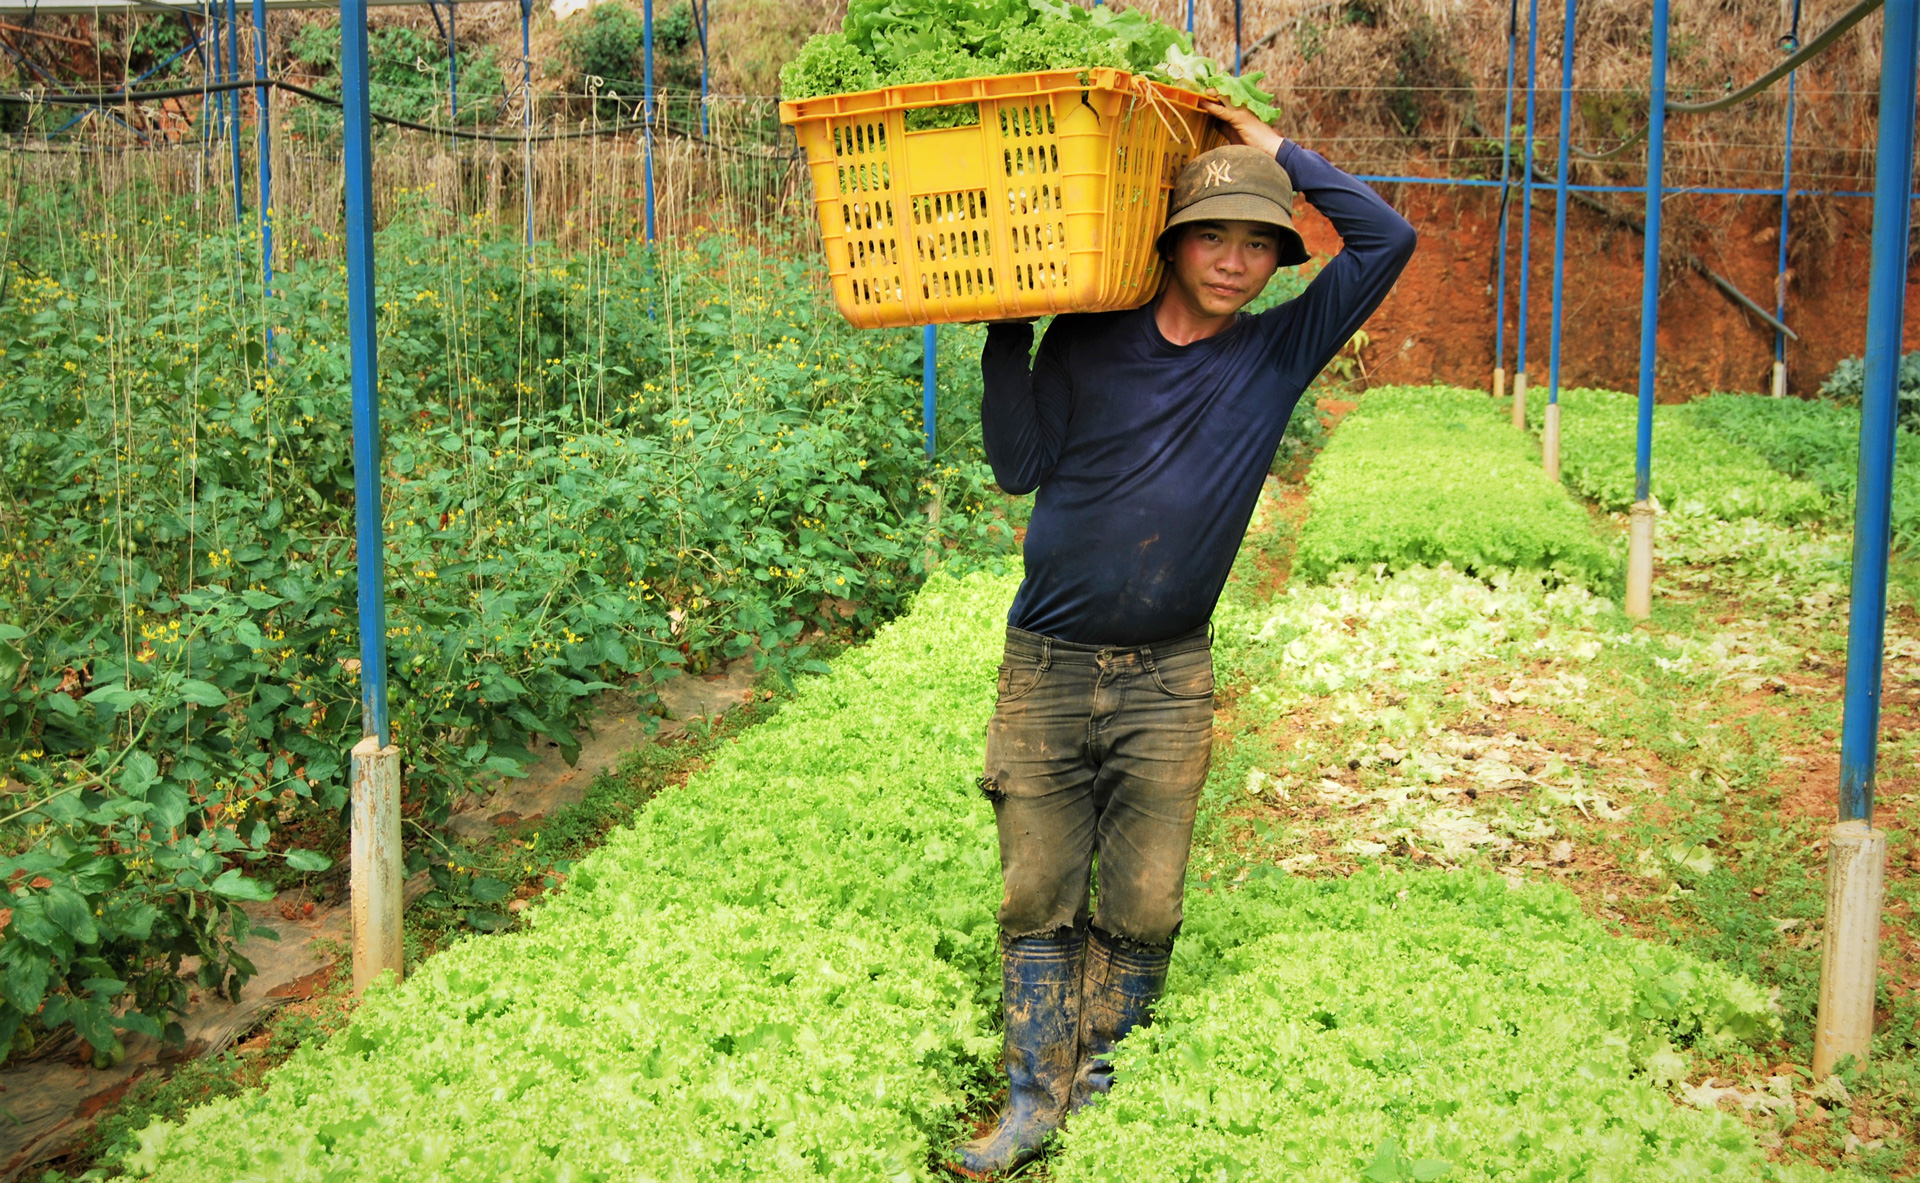 Mỗi ngày Trang trại Nguyễn Thanh Hải tận dụng trên dưới 150 kg phụ phẩm rau, củ, quả để ủ thành phân hữu cơ